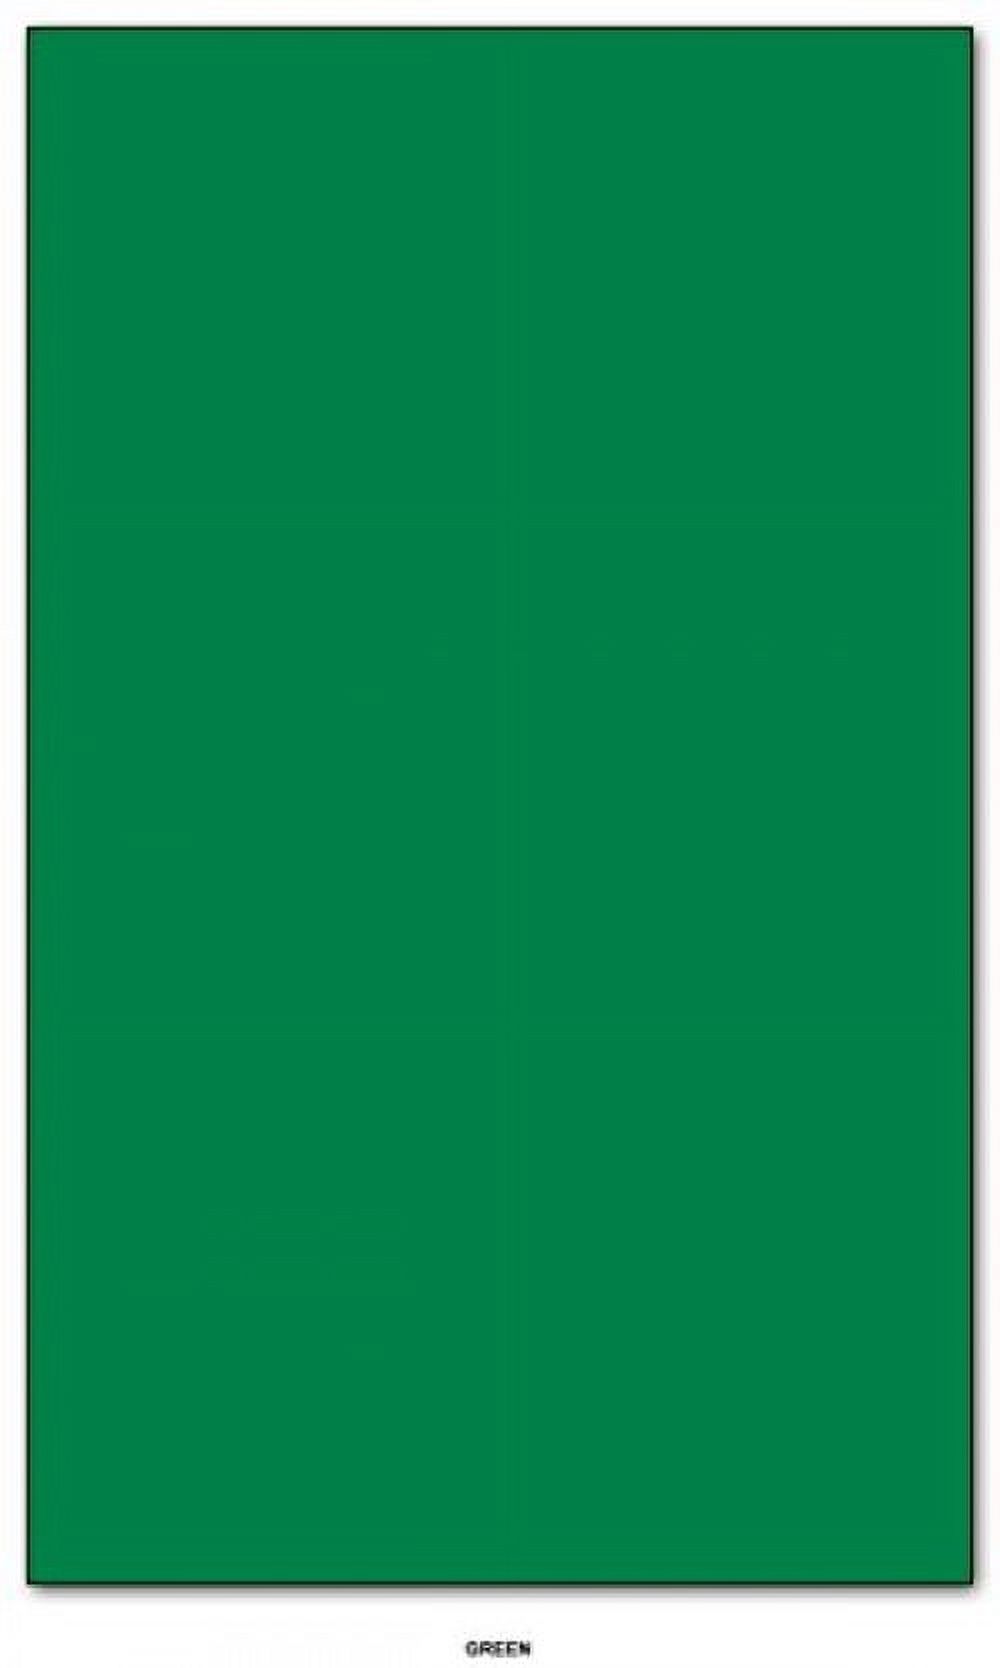 Mohawk BriteHue Bright Color Paper | Green | 24lb Bond / 60lb Text Paper | 8.5" x 14" (Legal Size) | 100 Sheets Per Pack - image 2 of 2